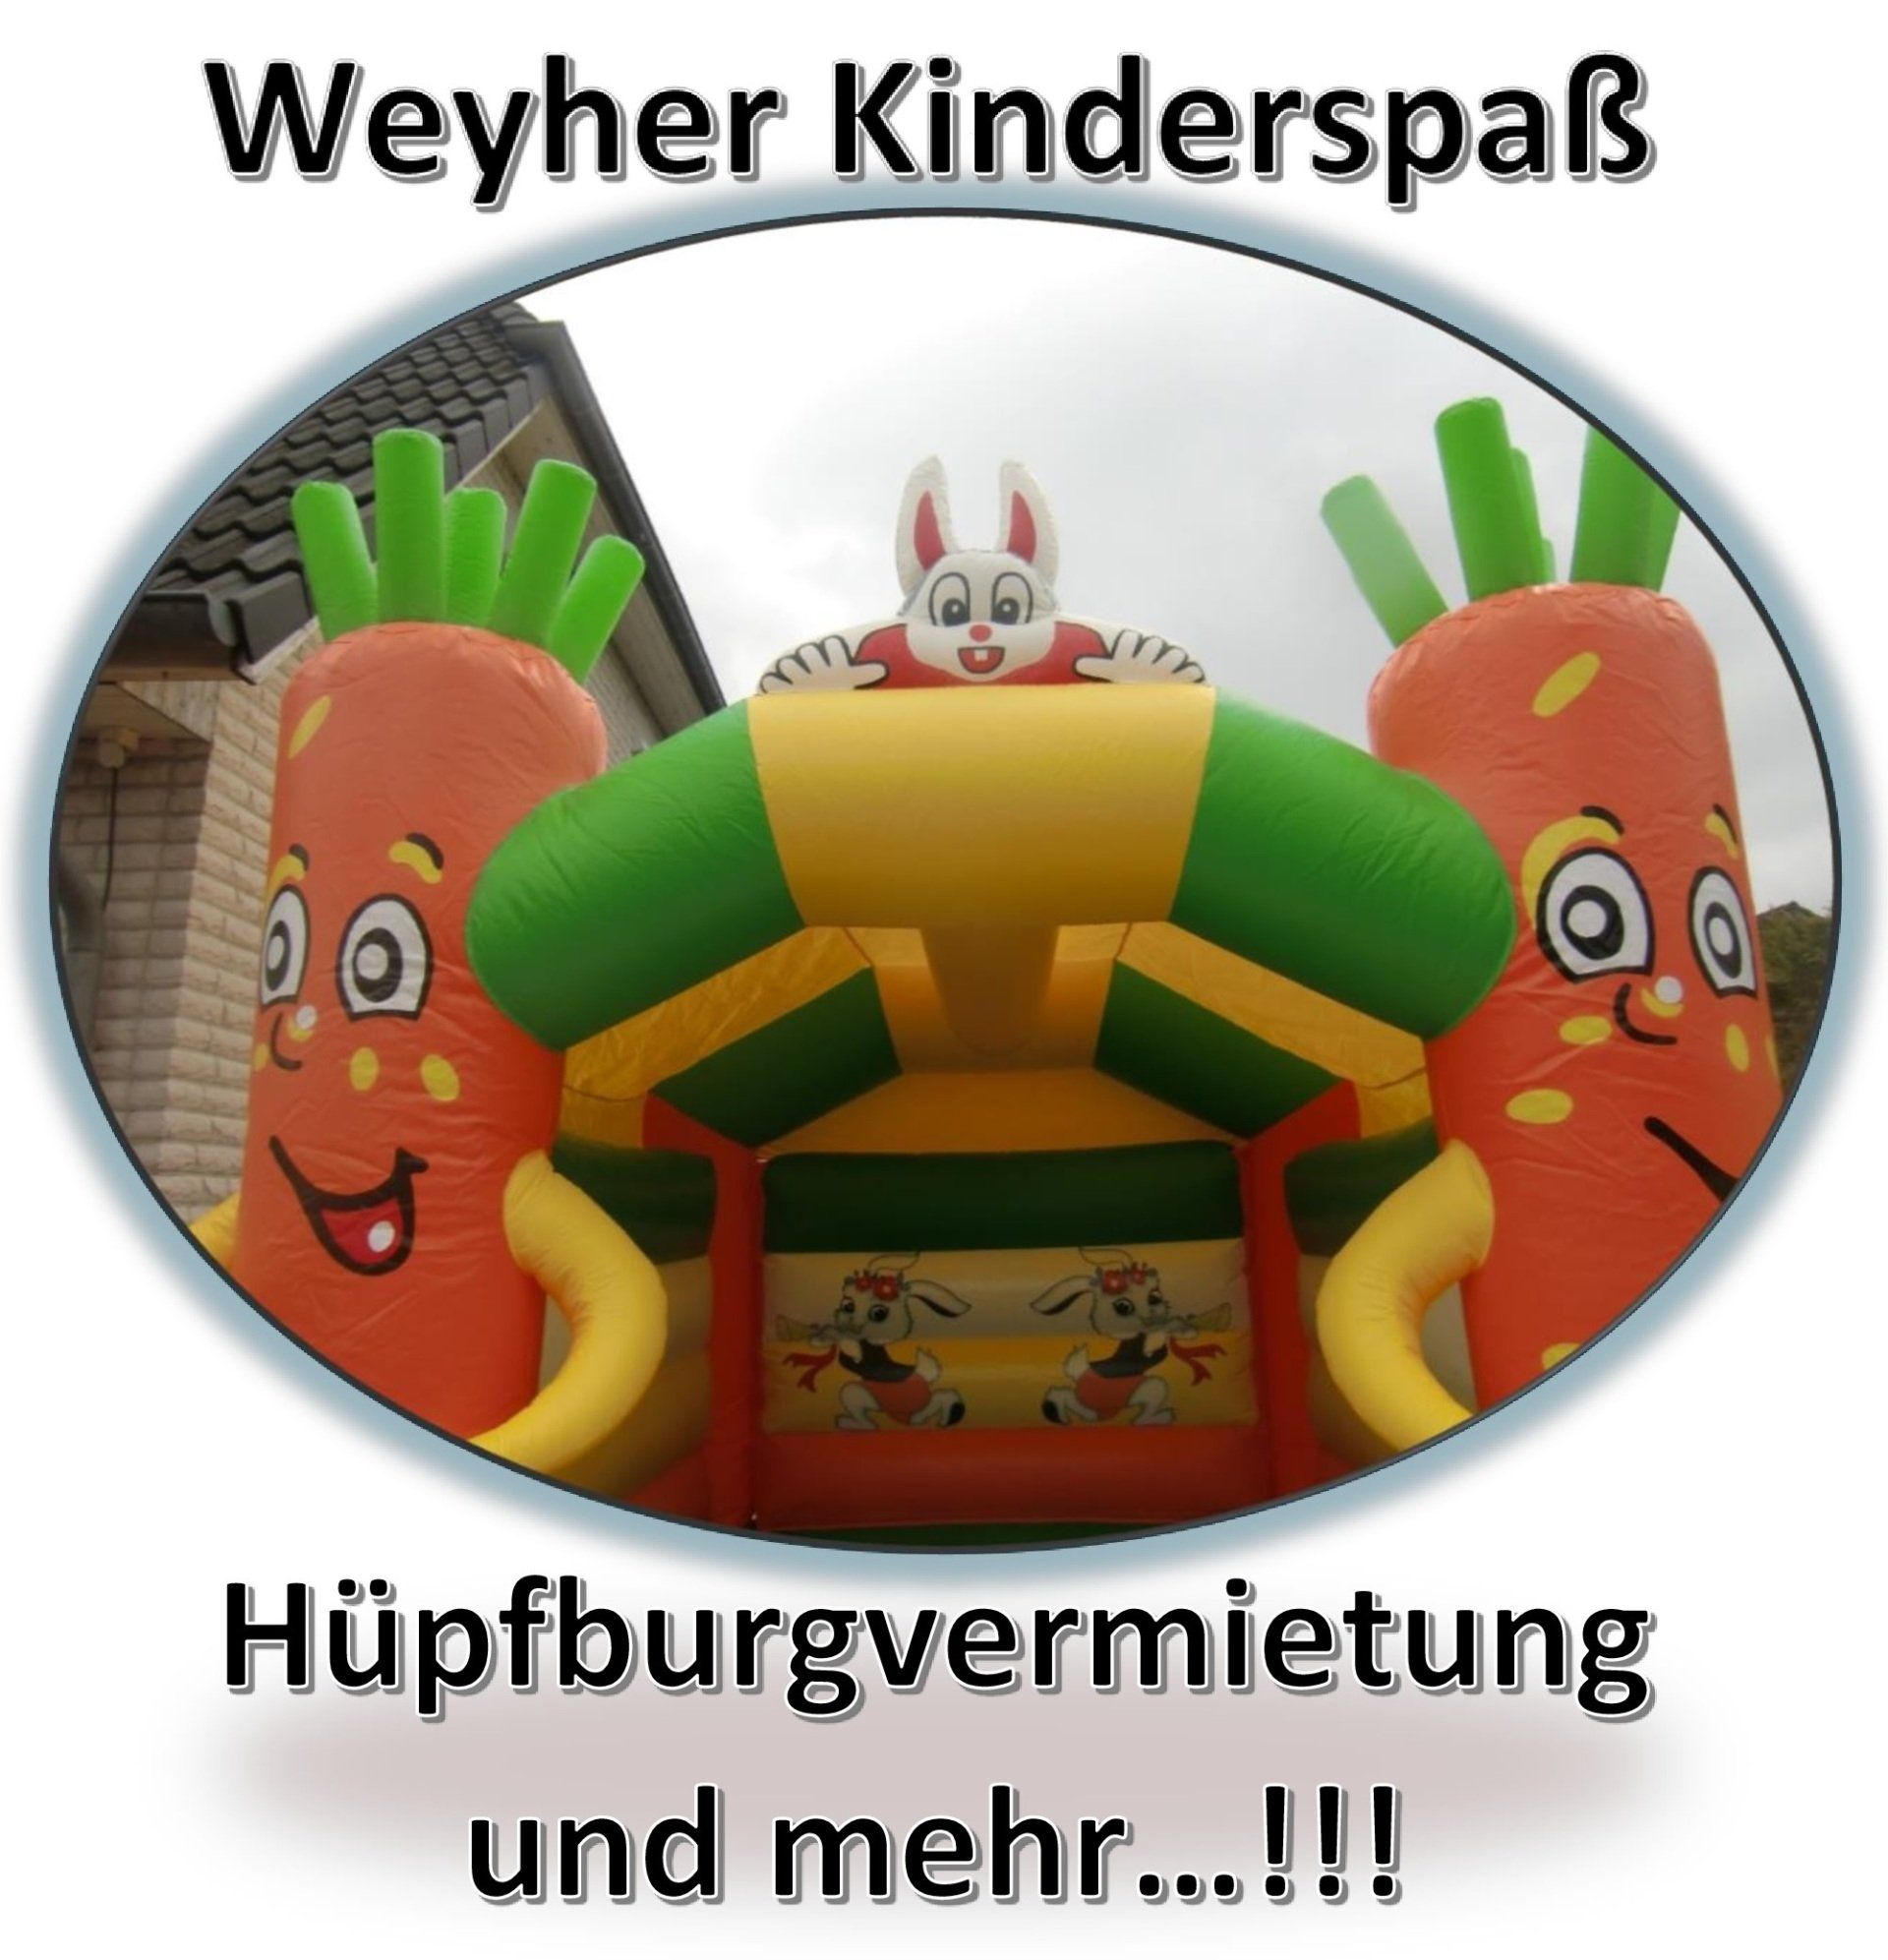 Weyher Kinderspaß - Hüpfburgenvermietung und mehr...!!!